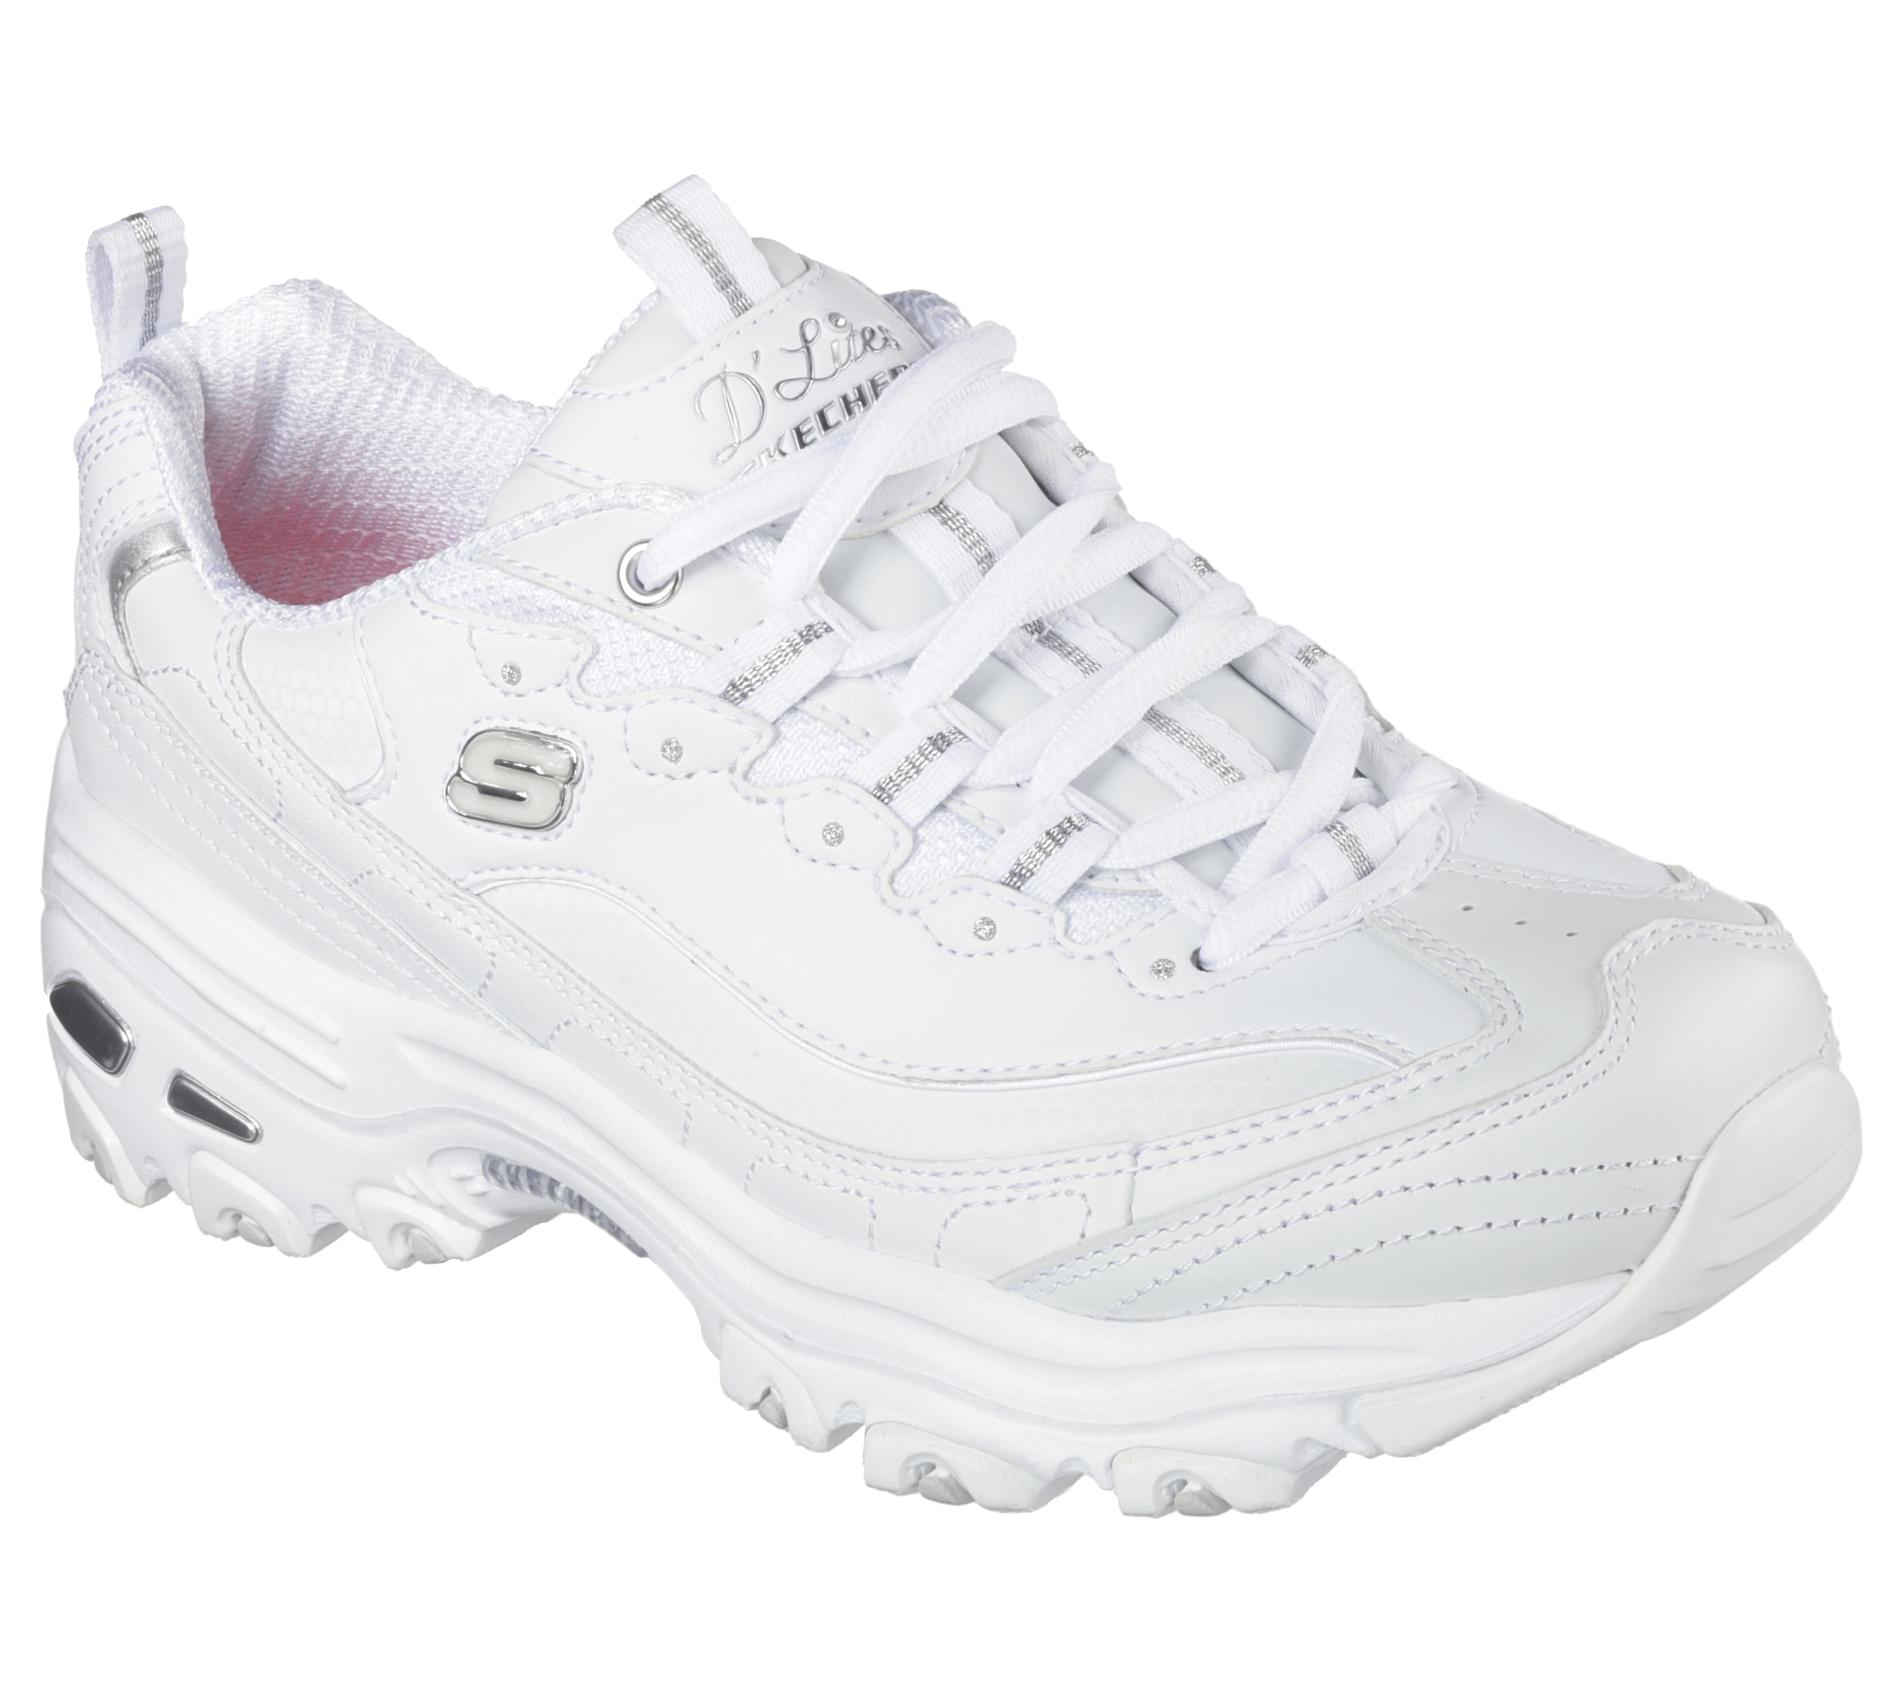 Skechers D'Lite Women's Fresh Start White Walking Shoe - Wide Width